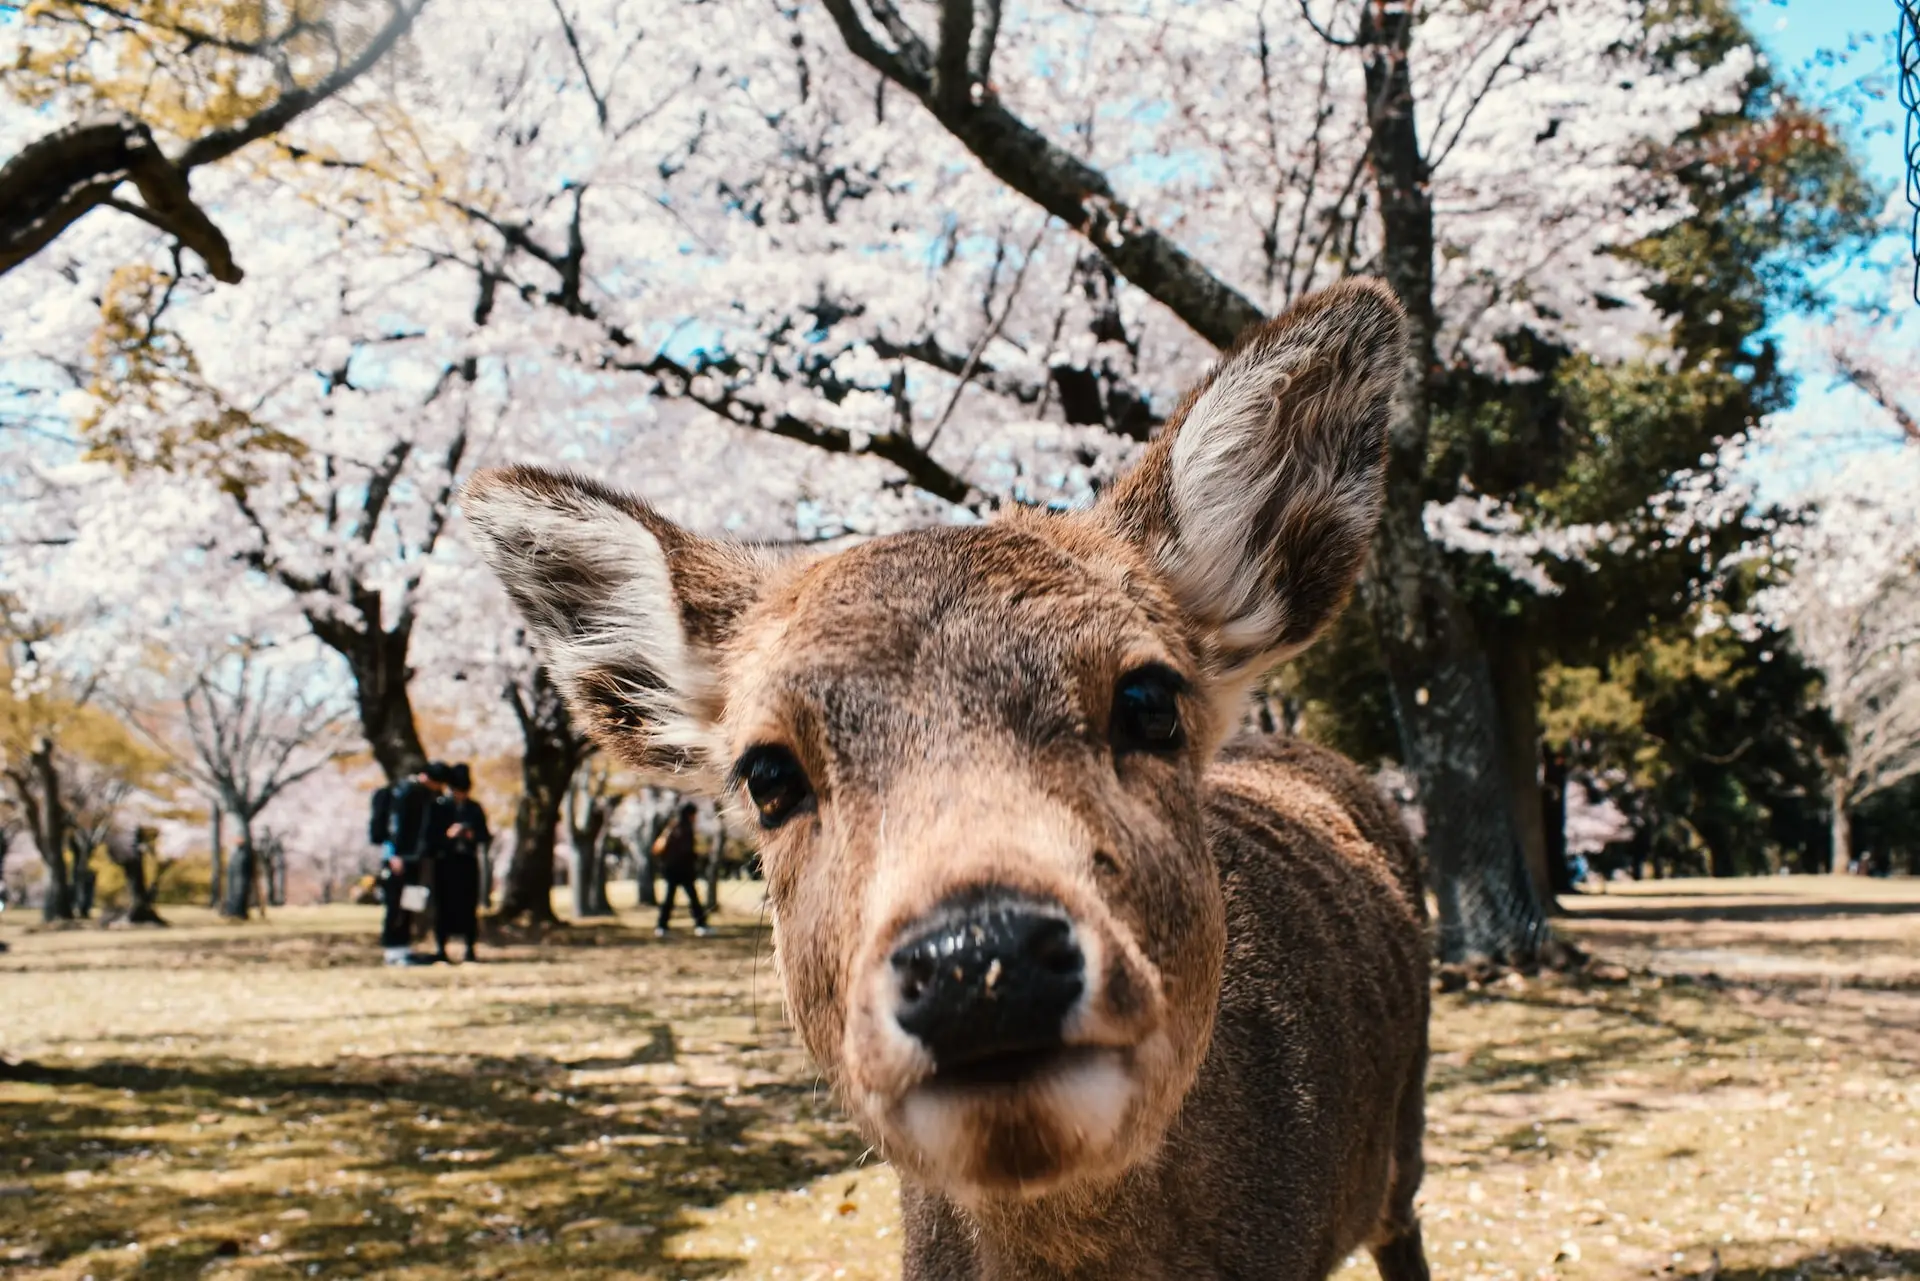 How to Get Around Nara